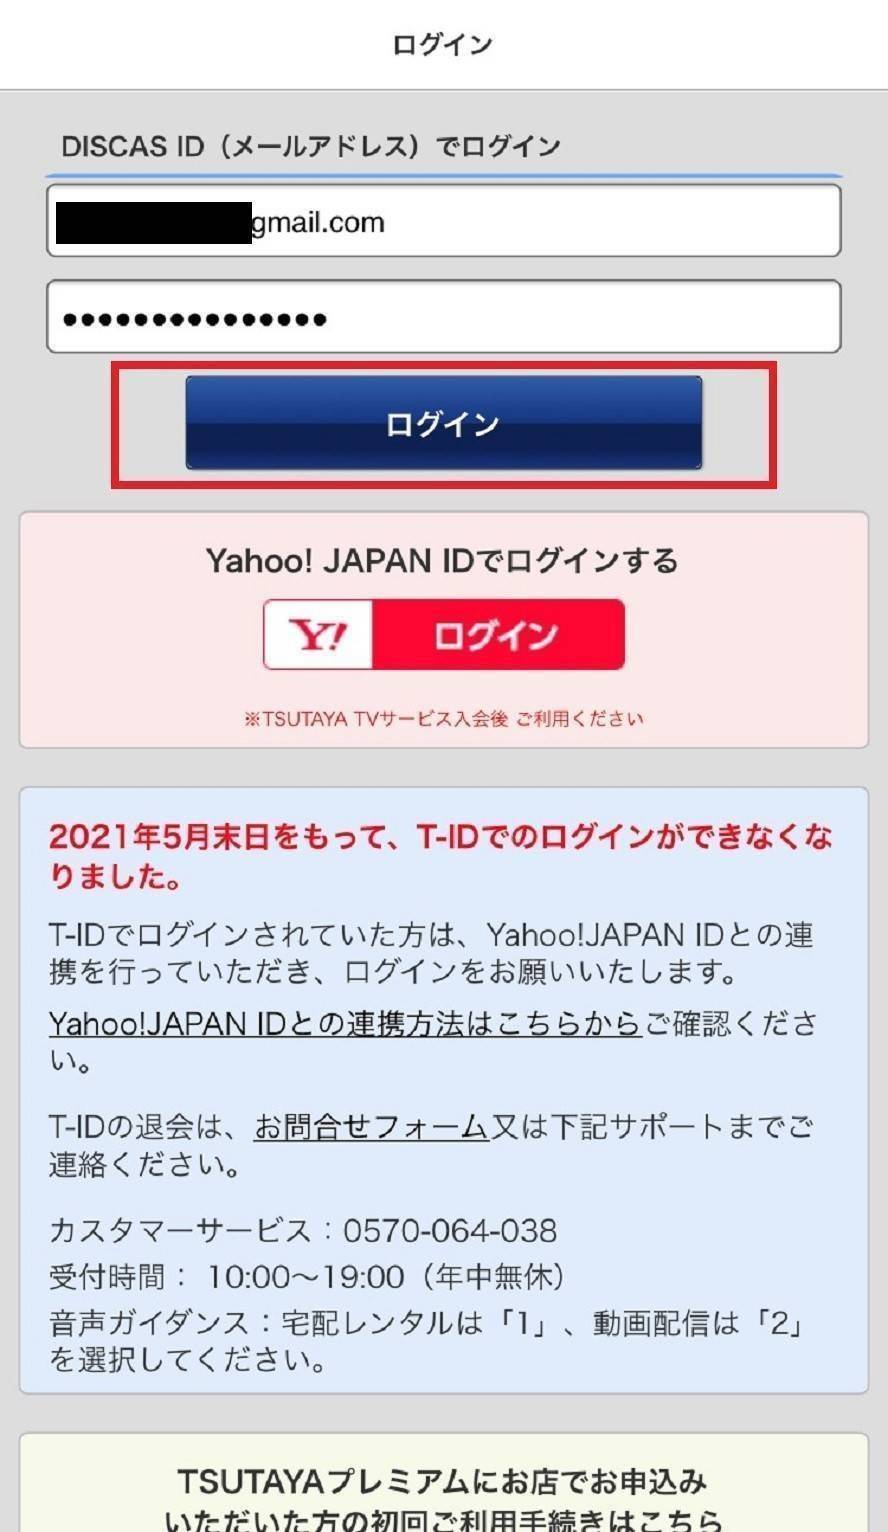 『TSUTAYA TV』のログイン画面。